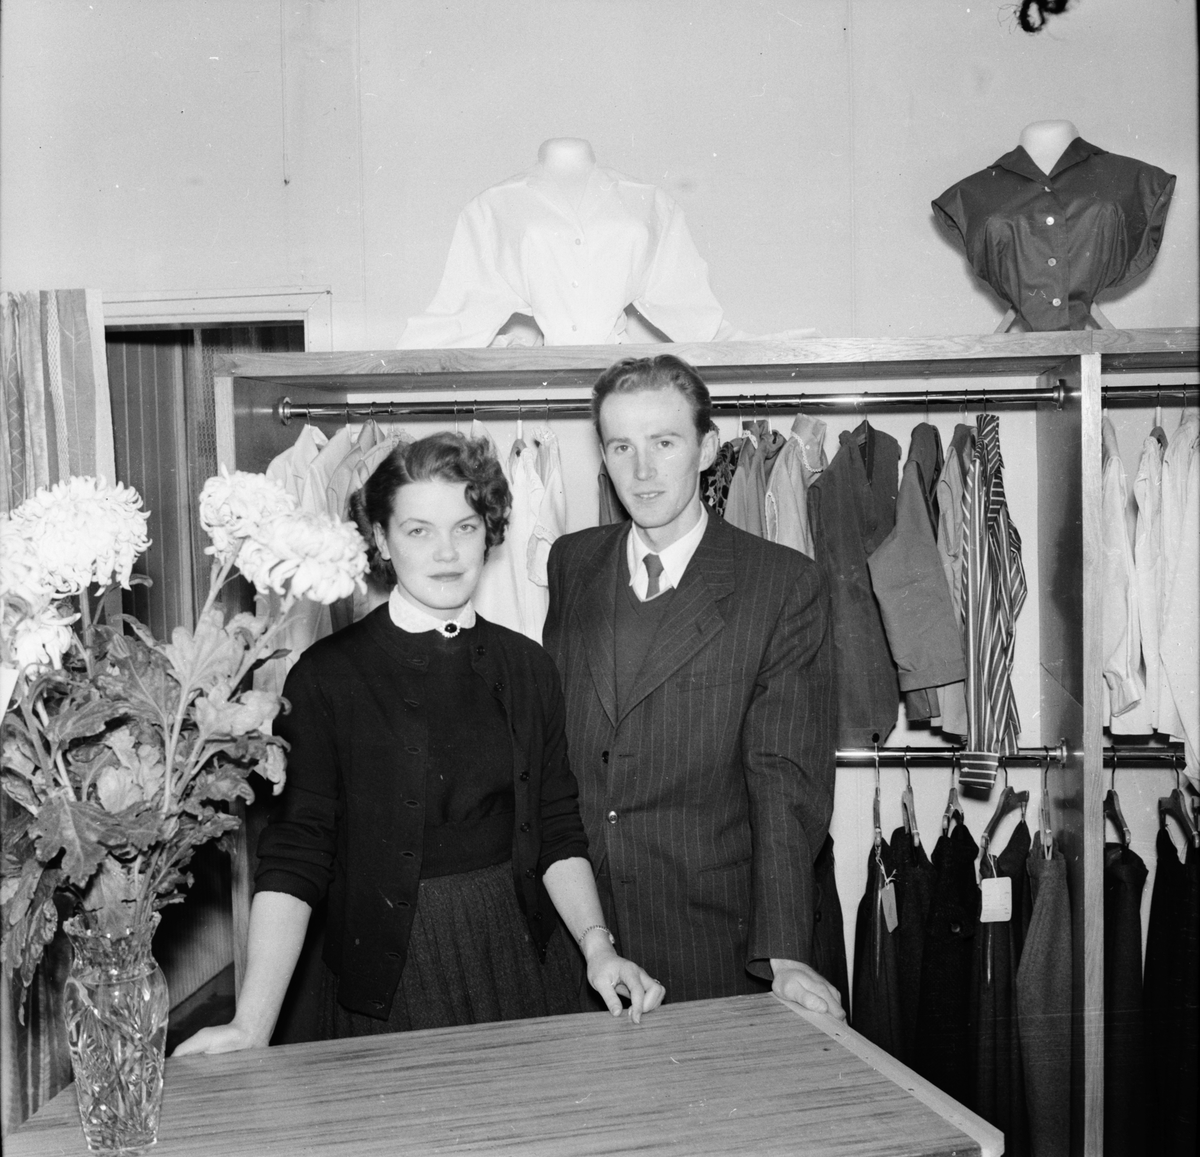 Kjol och Blus. Stieg Sandberg
1955